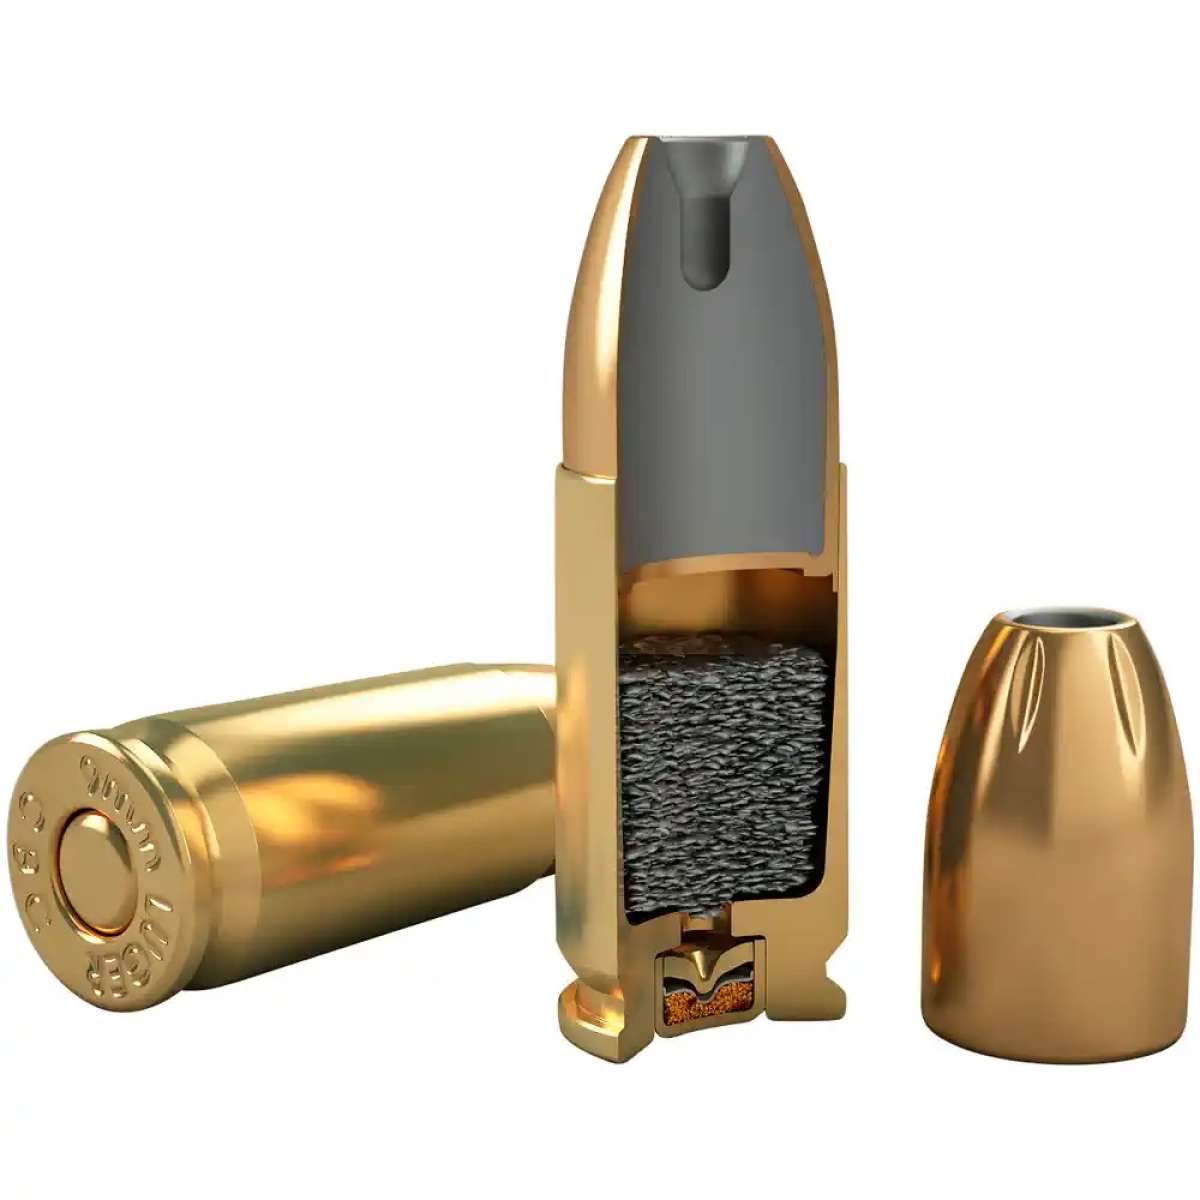 Magtech 9 mm Luger JHP 9,5g/147grs. Sub